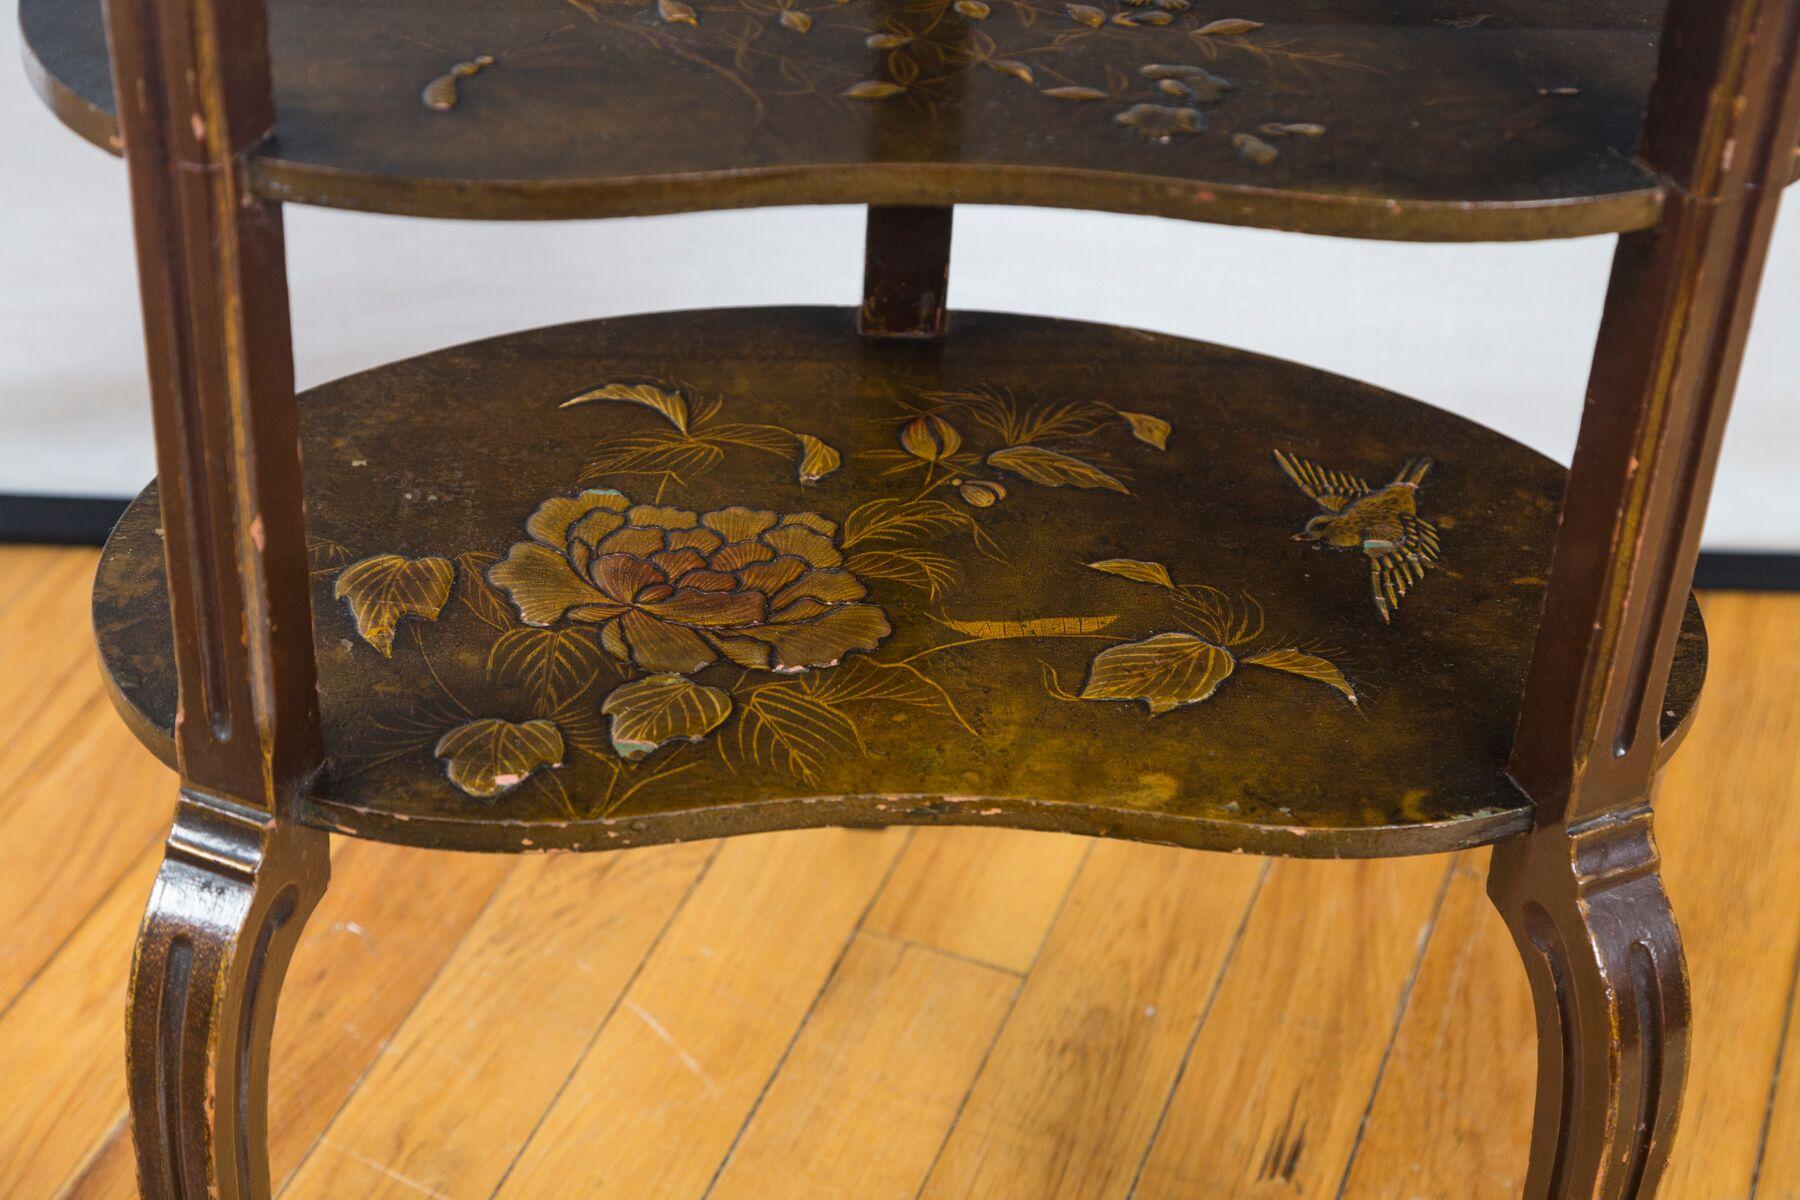 Chiffonier-Tisch im Stil Louis XV. mit Japanlack (Holz)